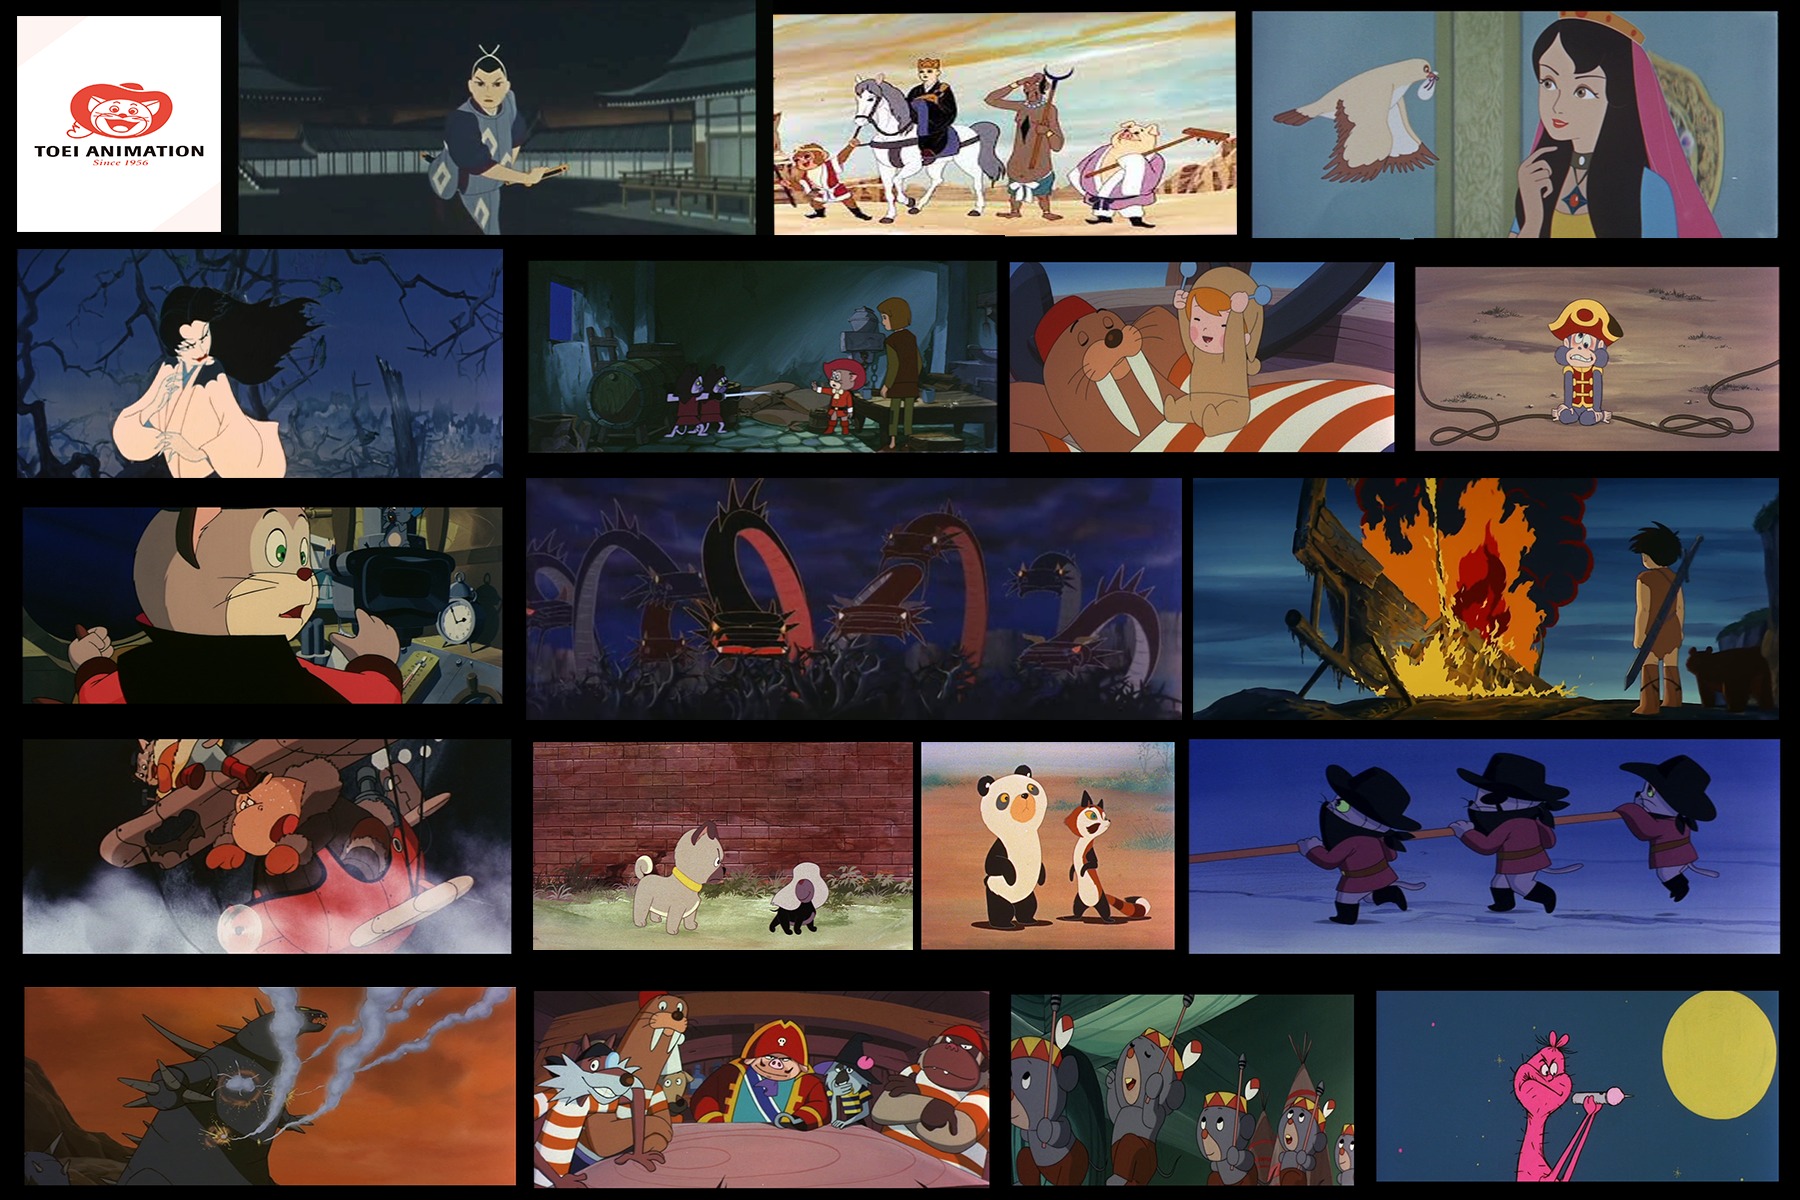 Metraggi d’animazione Le origini dell’animazione cinematografica giapponese, i Classici Toei